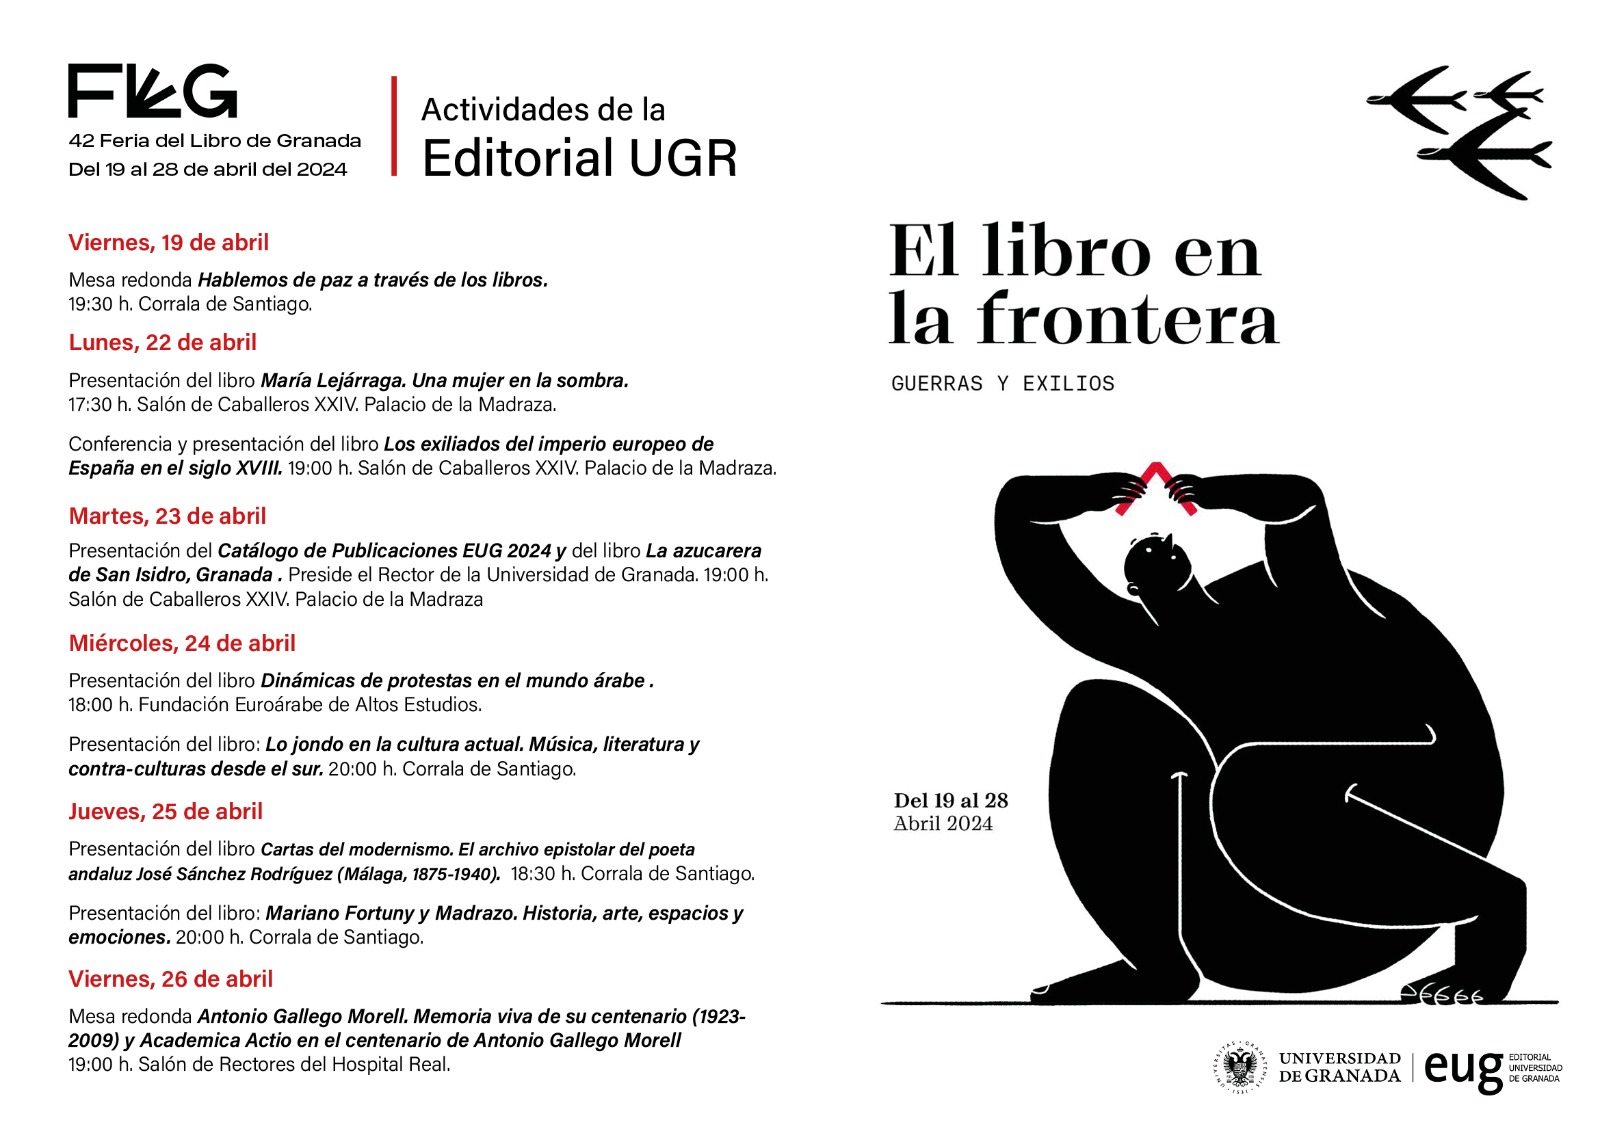 Programa de la EUG durante la Feria del Libro de Granada